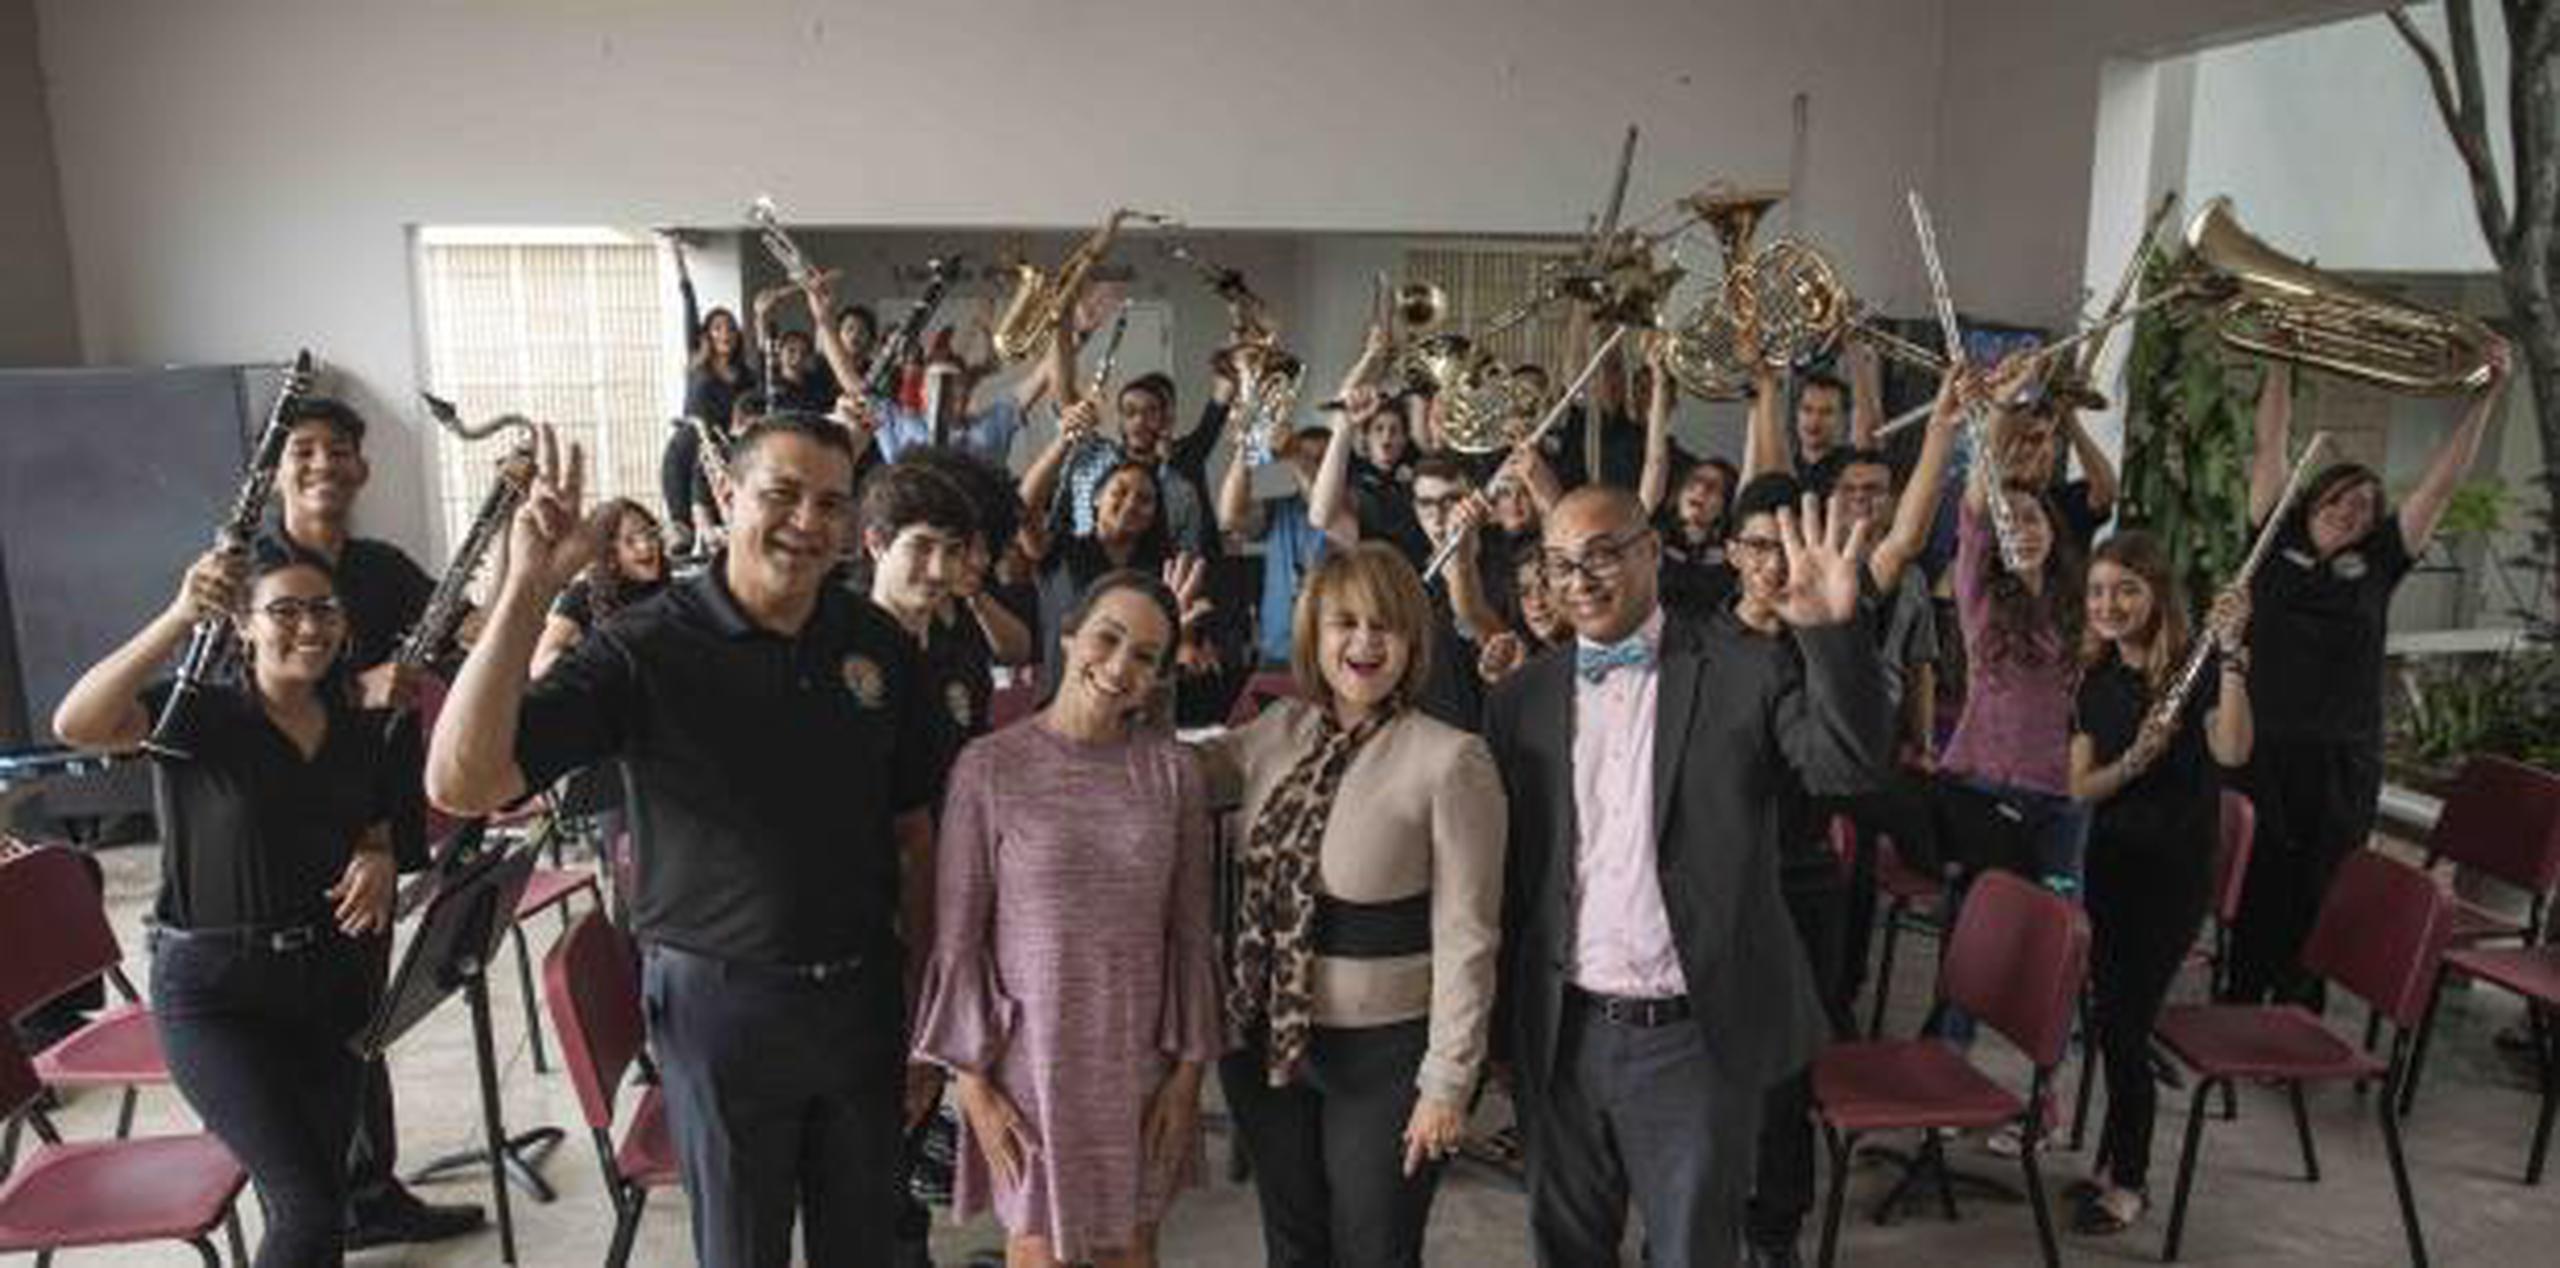 La agrupación musical de la escuela Libre de Música de Caguas será la primera participación puertorriqueña en este festival que reúne la excelencia de las bandas a nivel internacional, evento que lleva realizándose por cerca de cien años. (Suministrada)